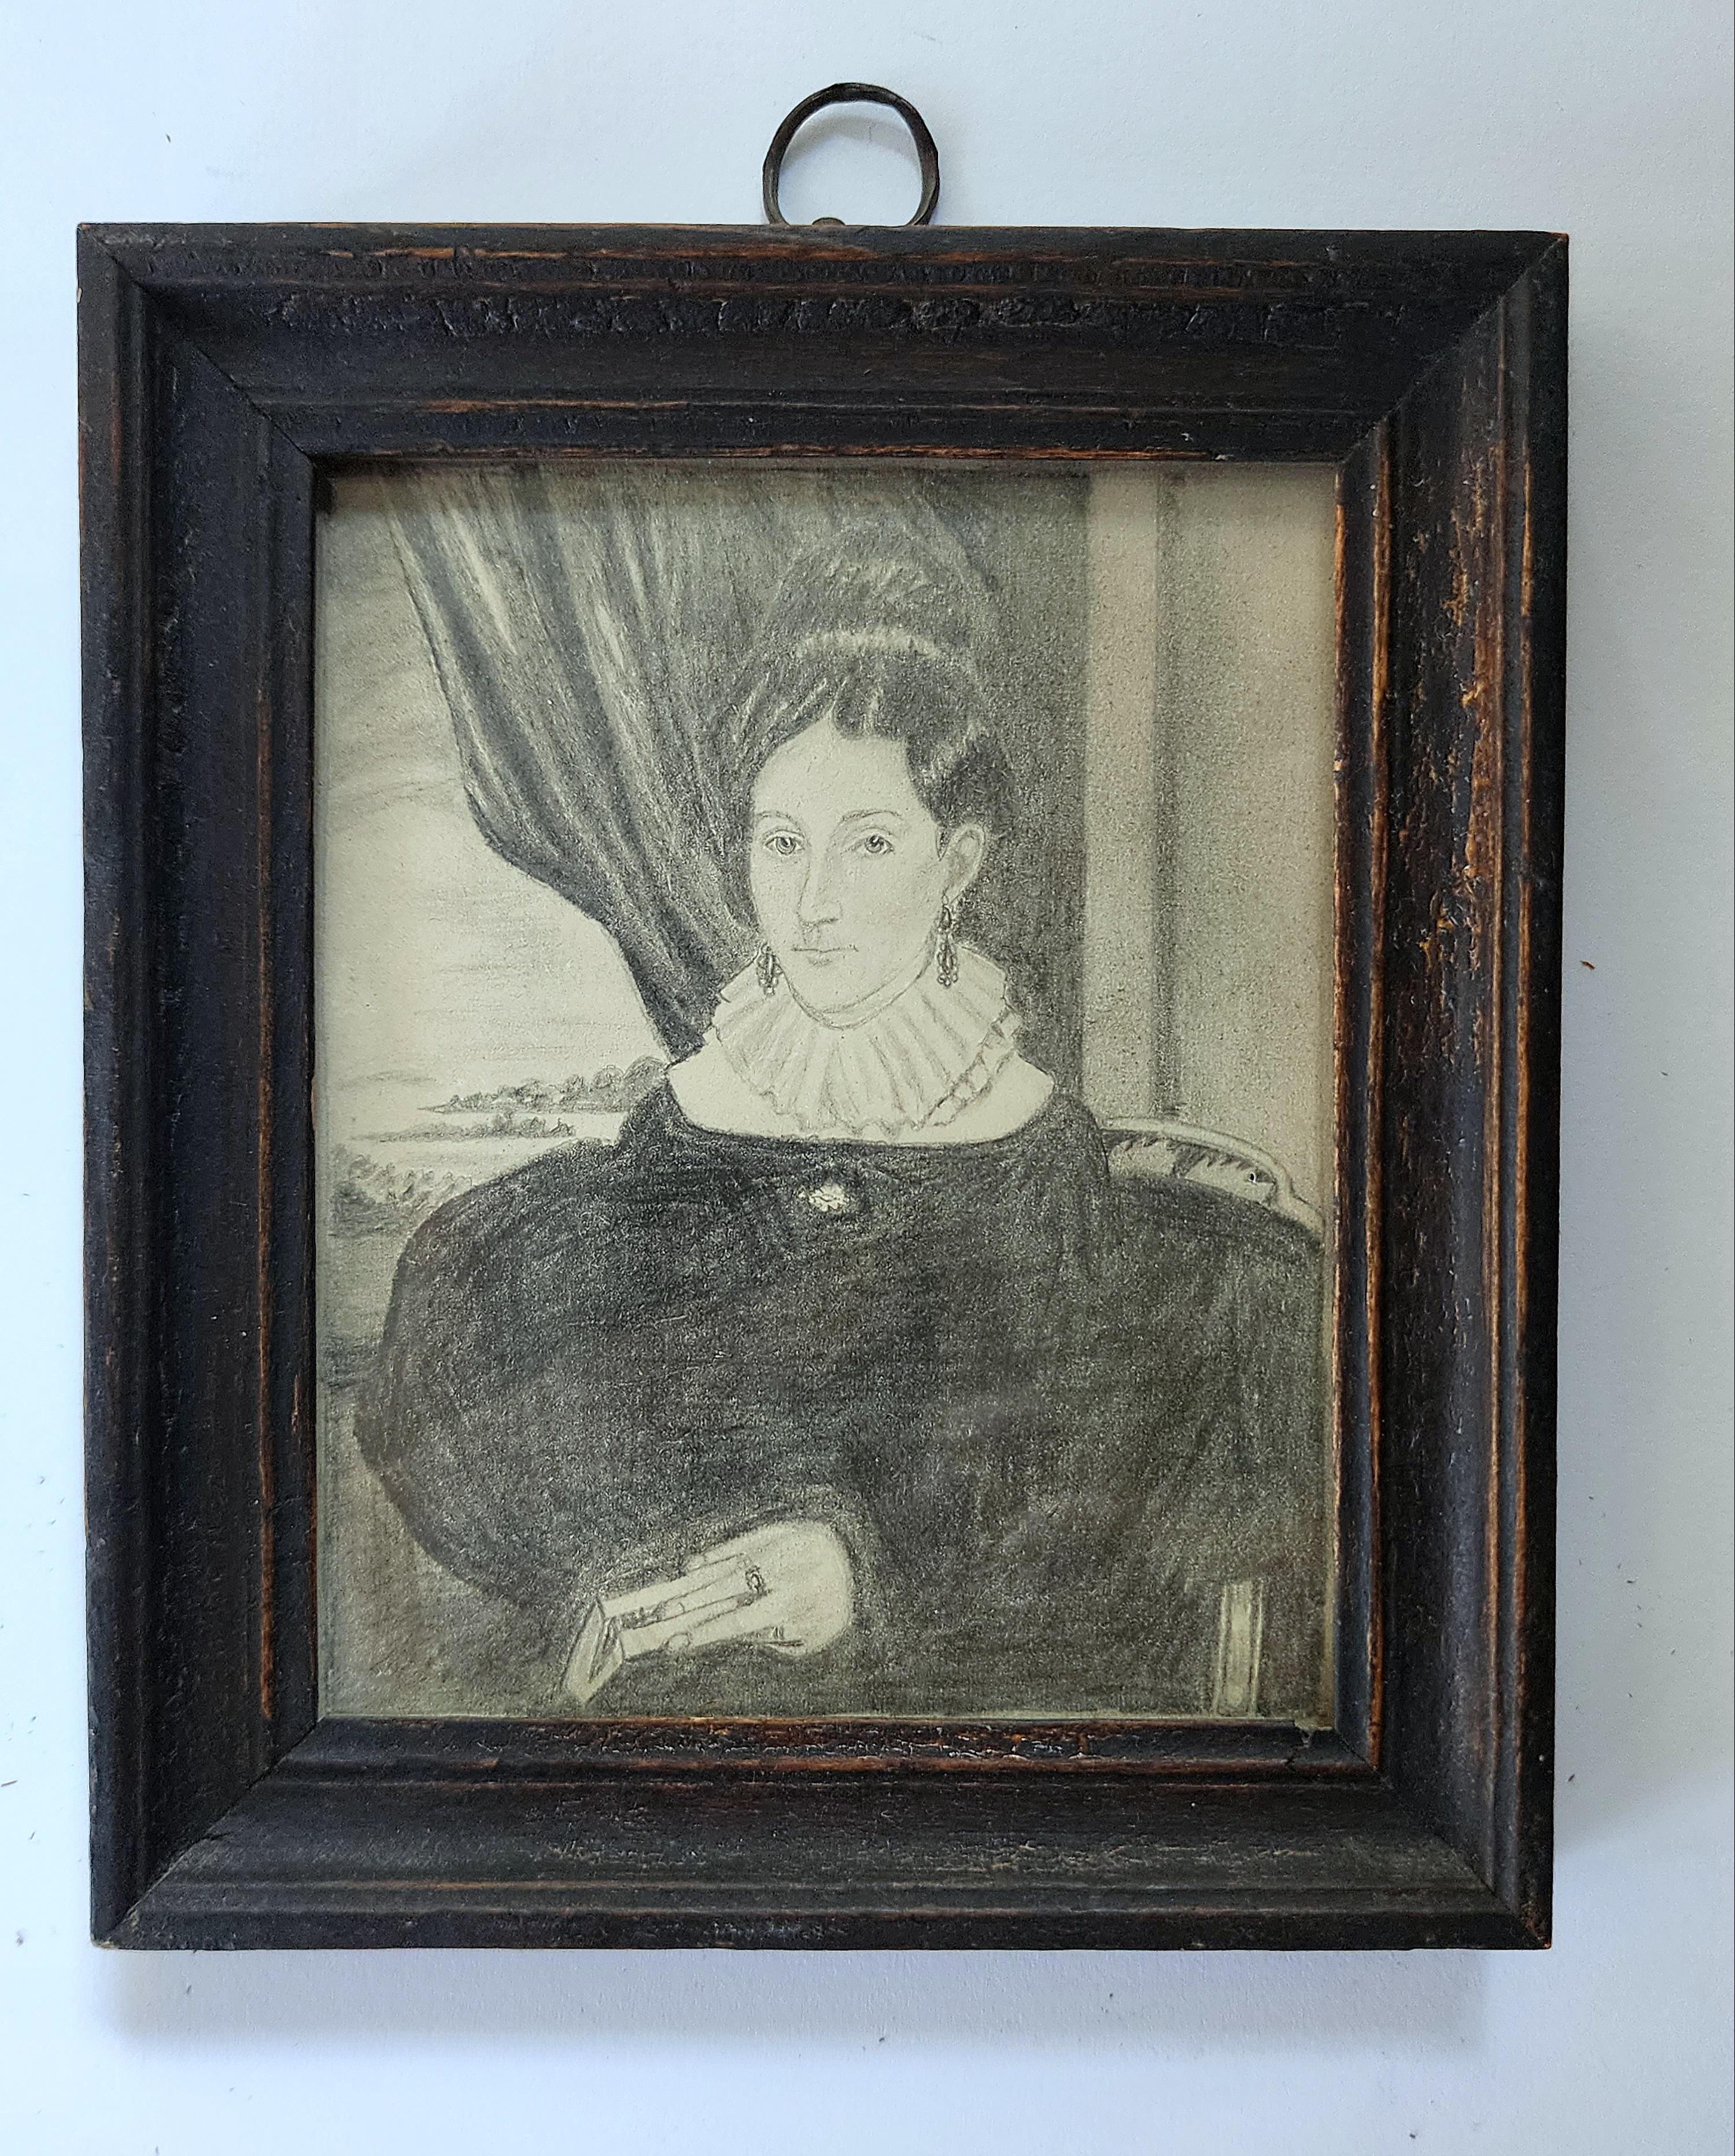 Il s'agit d'un très beau portrait de femme, très détaillé et bien exécuté. Réalisé au début du XIXe siècle à la mine de plomb sur papier. On peut voir la personne assise avec un livre à la main et une bague au doigt. Elle est assise dans une chaise